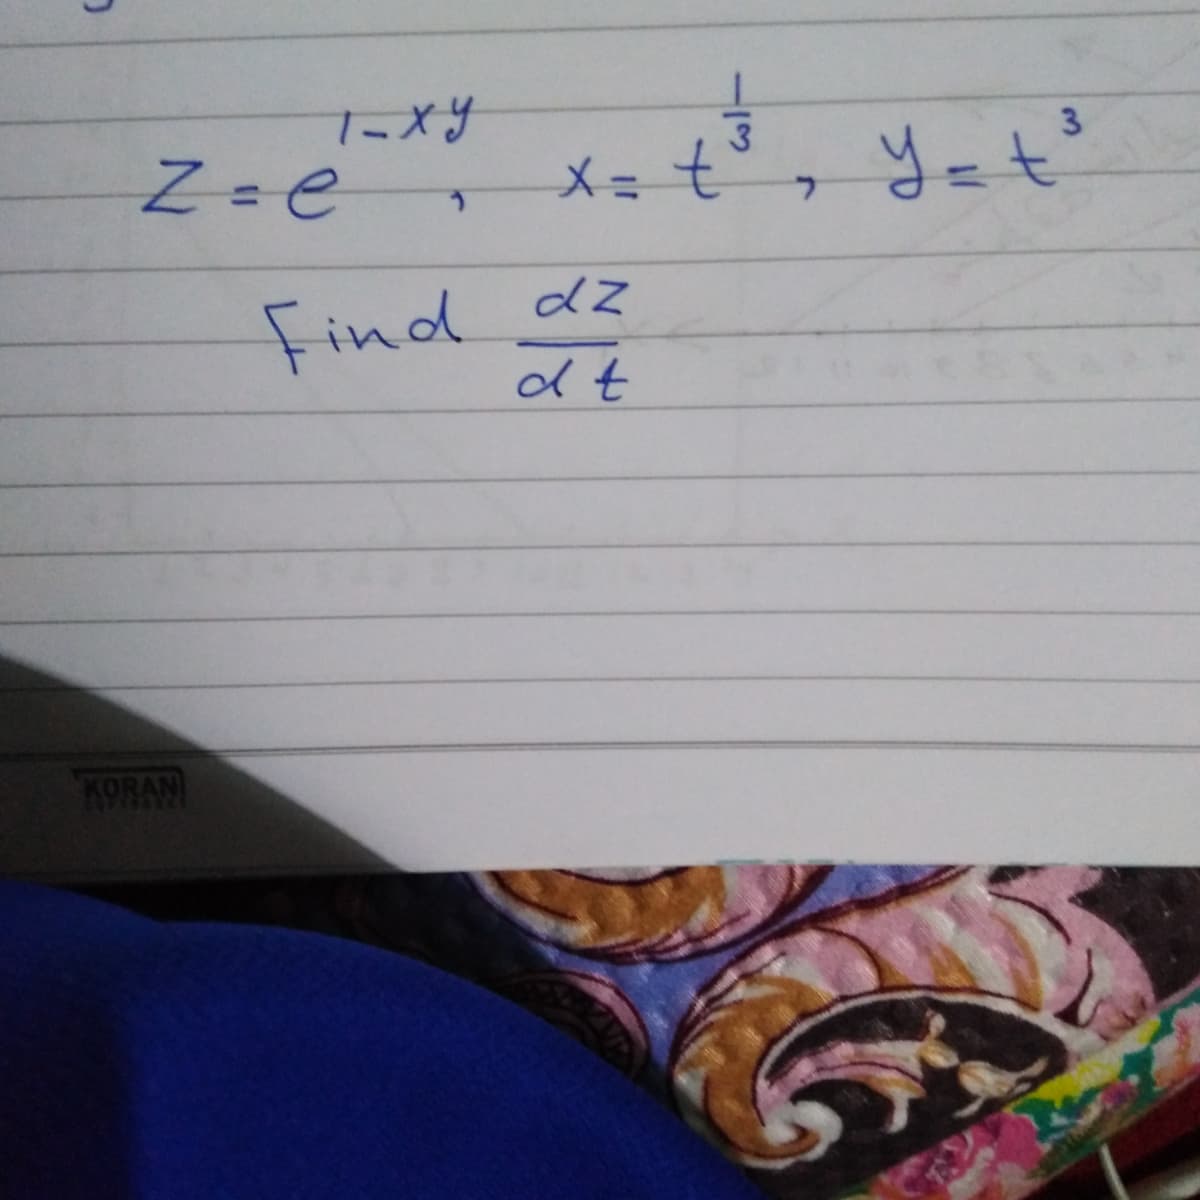 Z=e X= t
3
Z=e
メ= t
yet'
Find
KORAN
